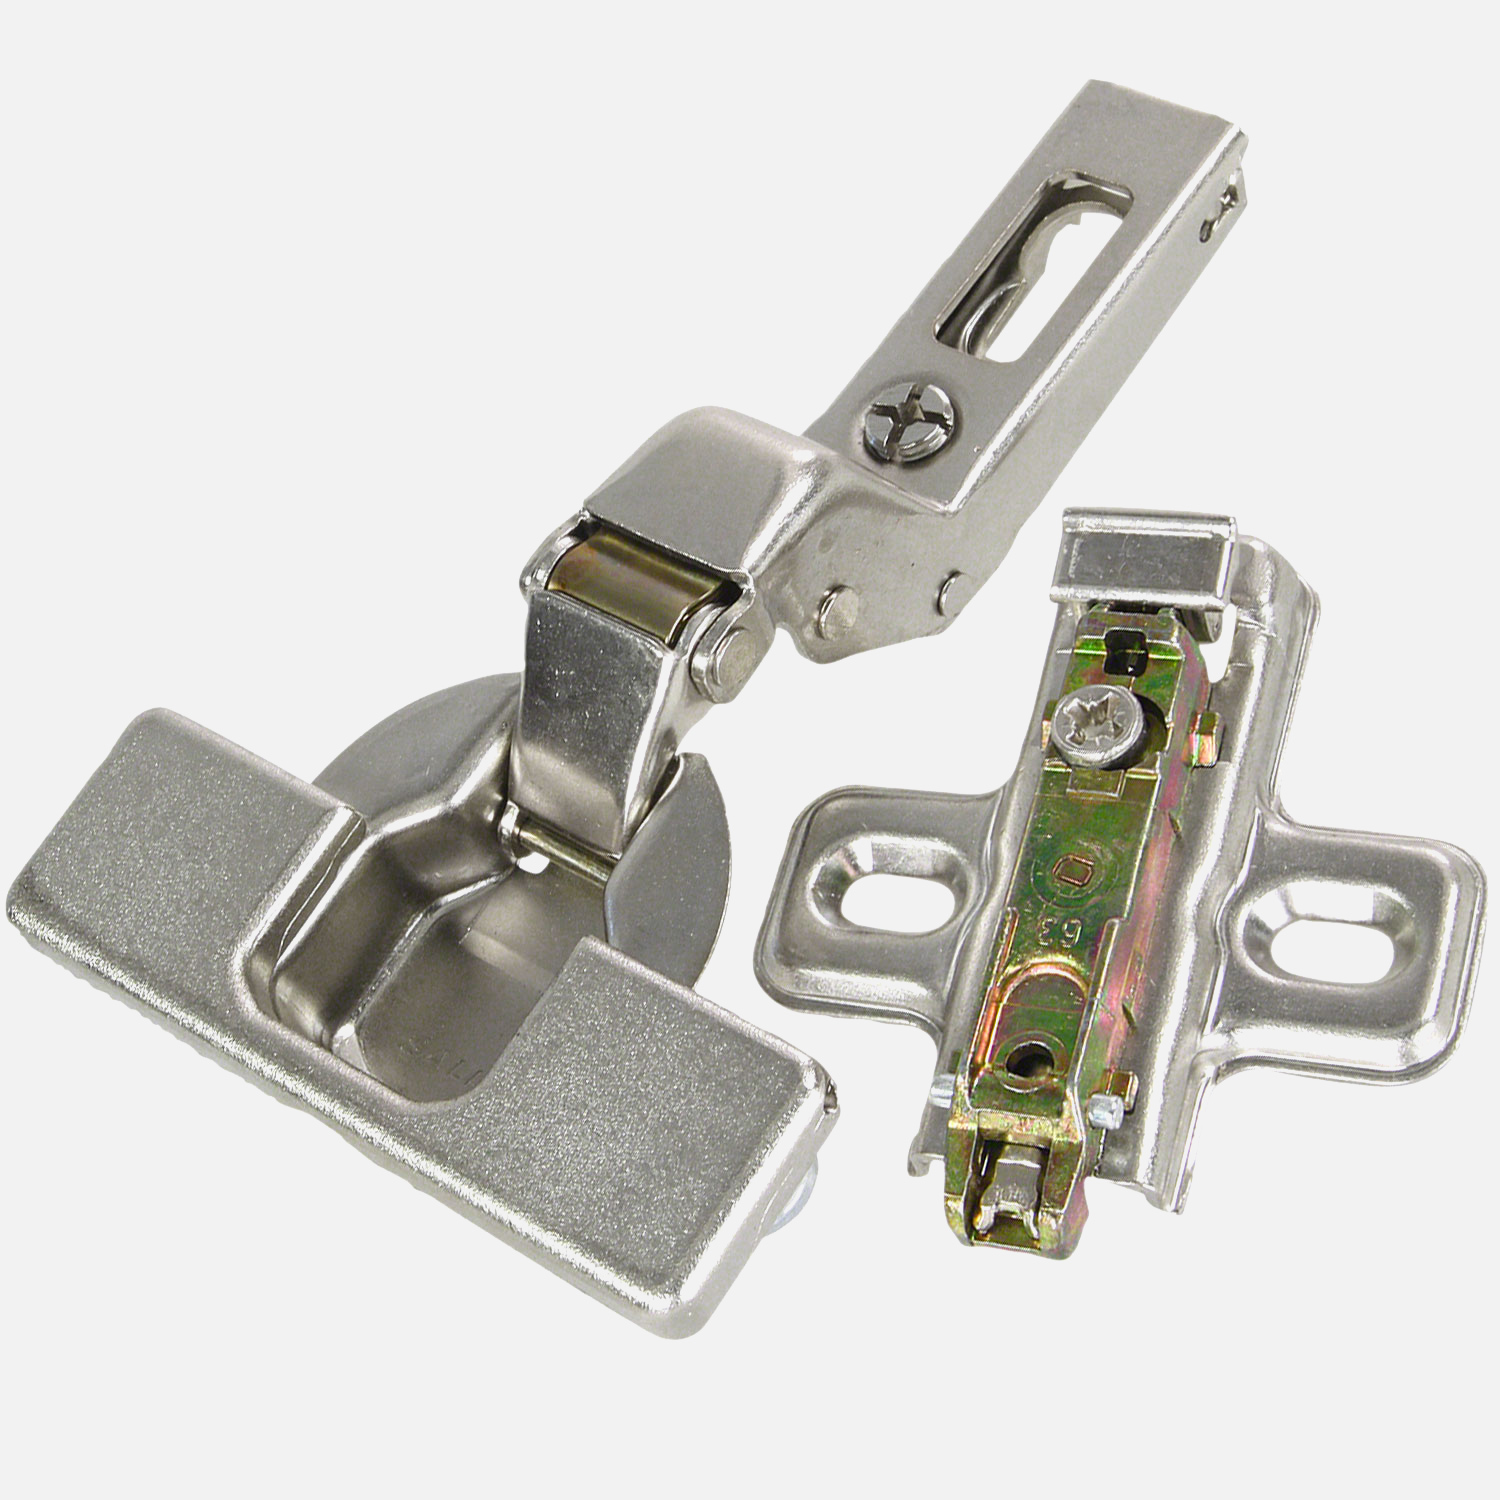 1 HSI Topfband - mit Clip und Schnellmontage - für Innentür - vernickelt - 35mm